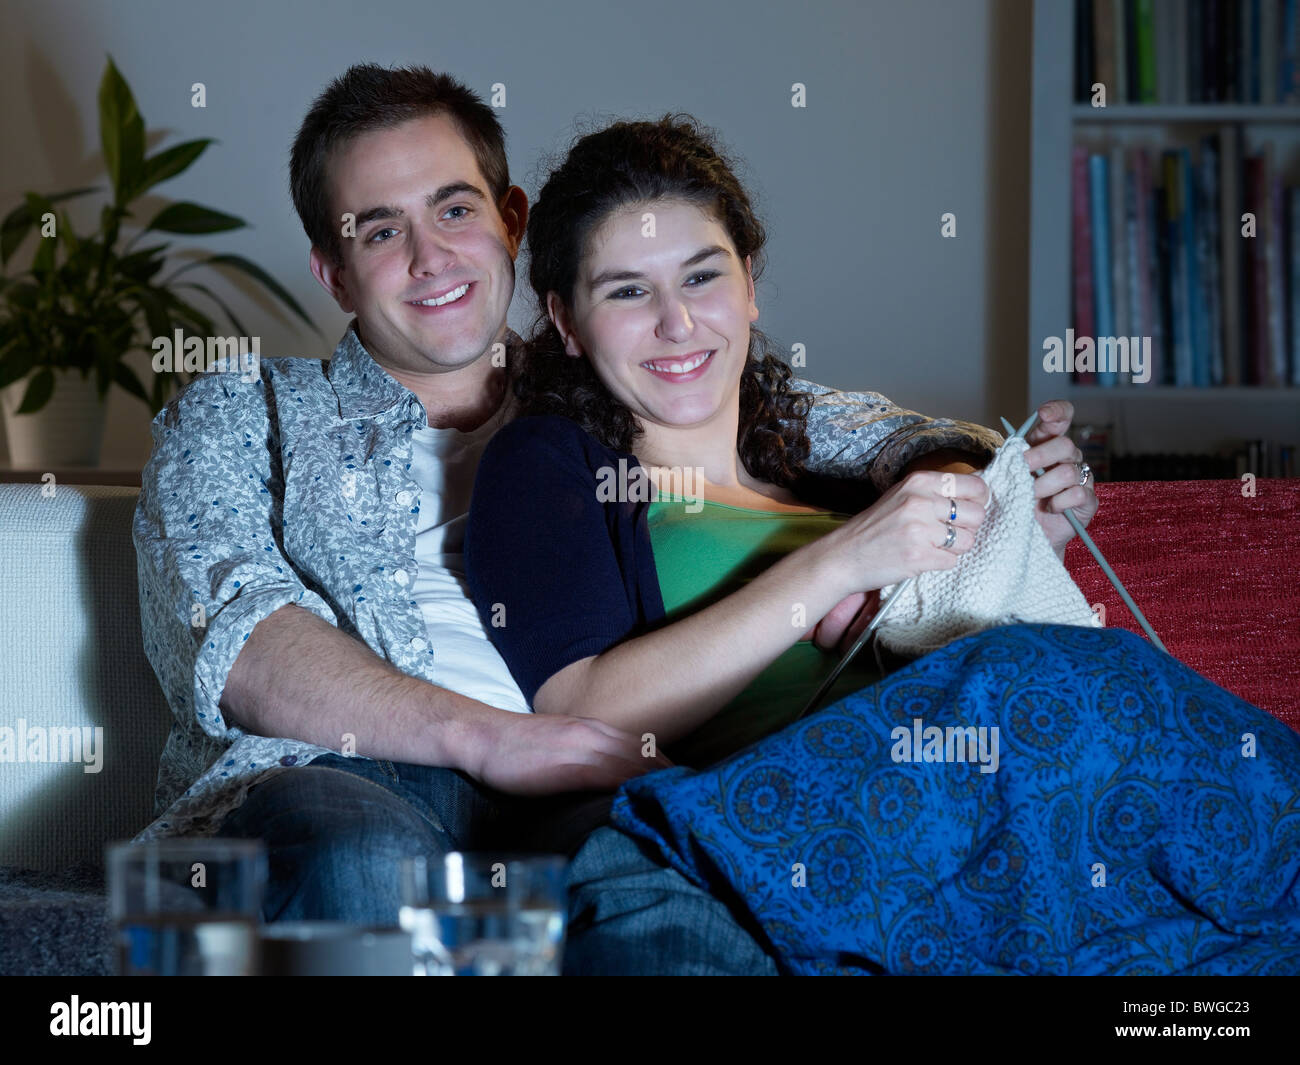 Paar kuscheln vor dem Fernseher Stockfotografie - Alamy